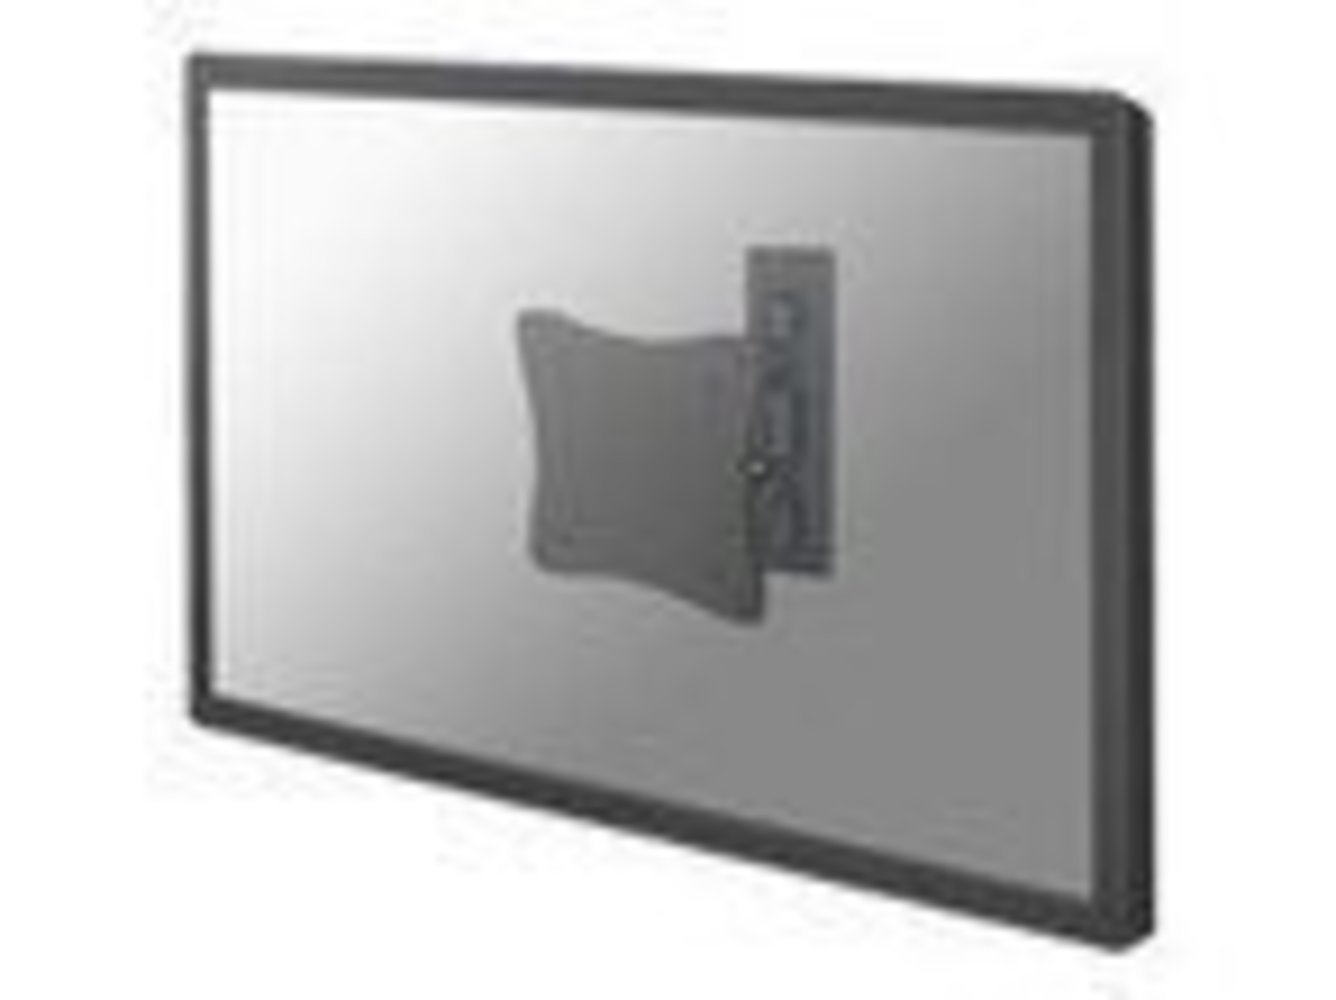 NEWSTAR FPMA-W810 Wandhalter - Universelle Halterung mit 1 Drehpunkt für LCD/LED/TFT-Bildschirme bis 24 Zoll (60 cm)